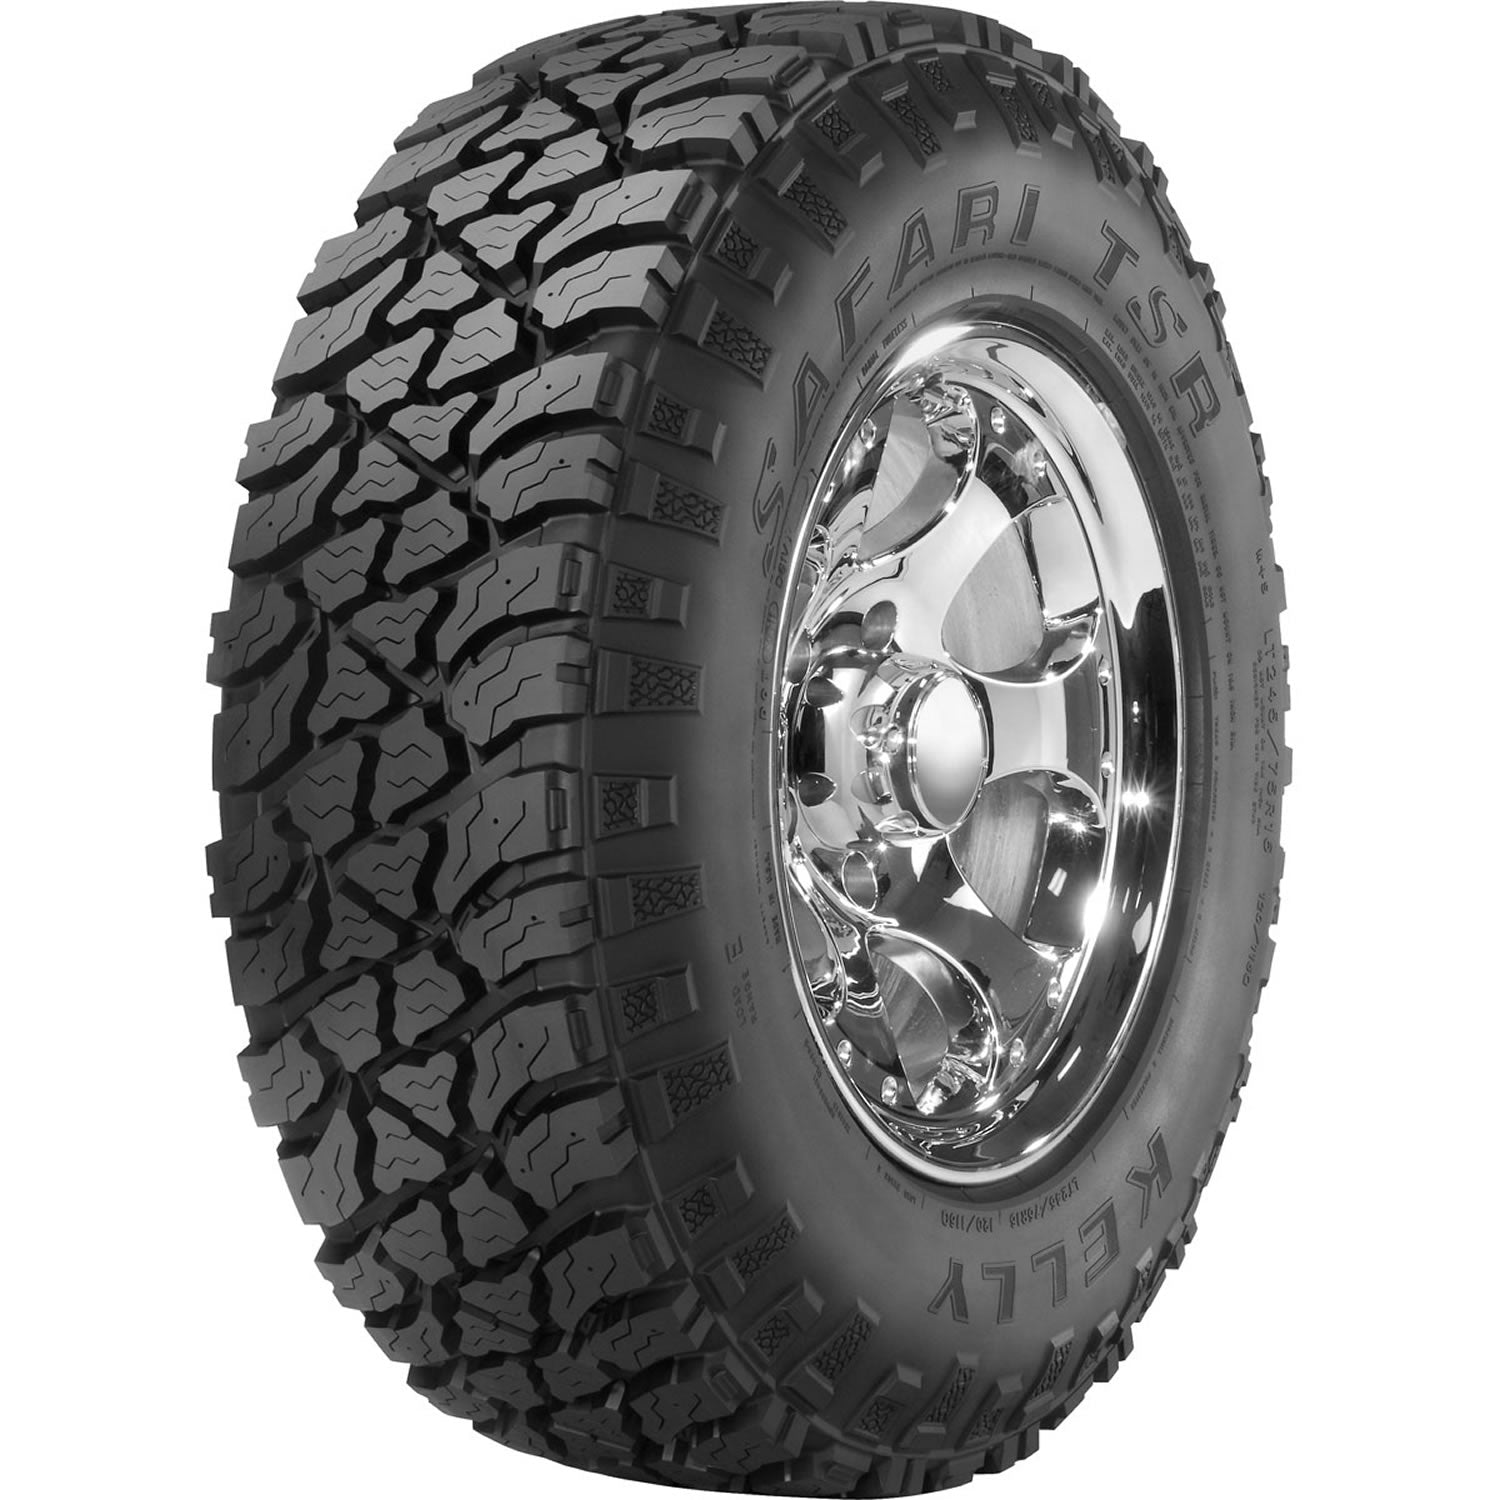 KELLY SAFARI TSR LT315/75R16 (34.8X12.3R 16) Tires